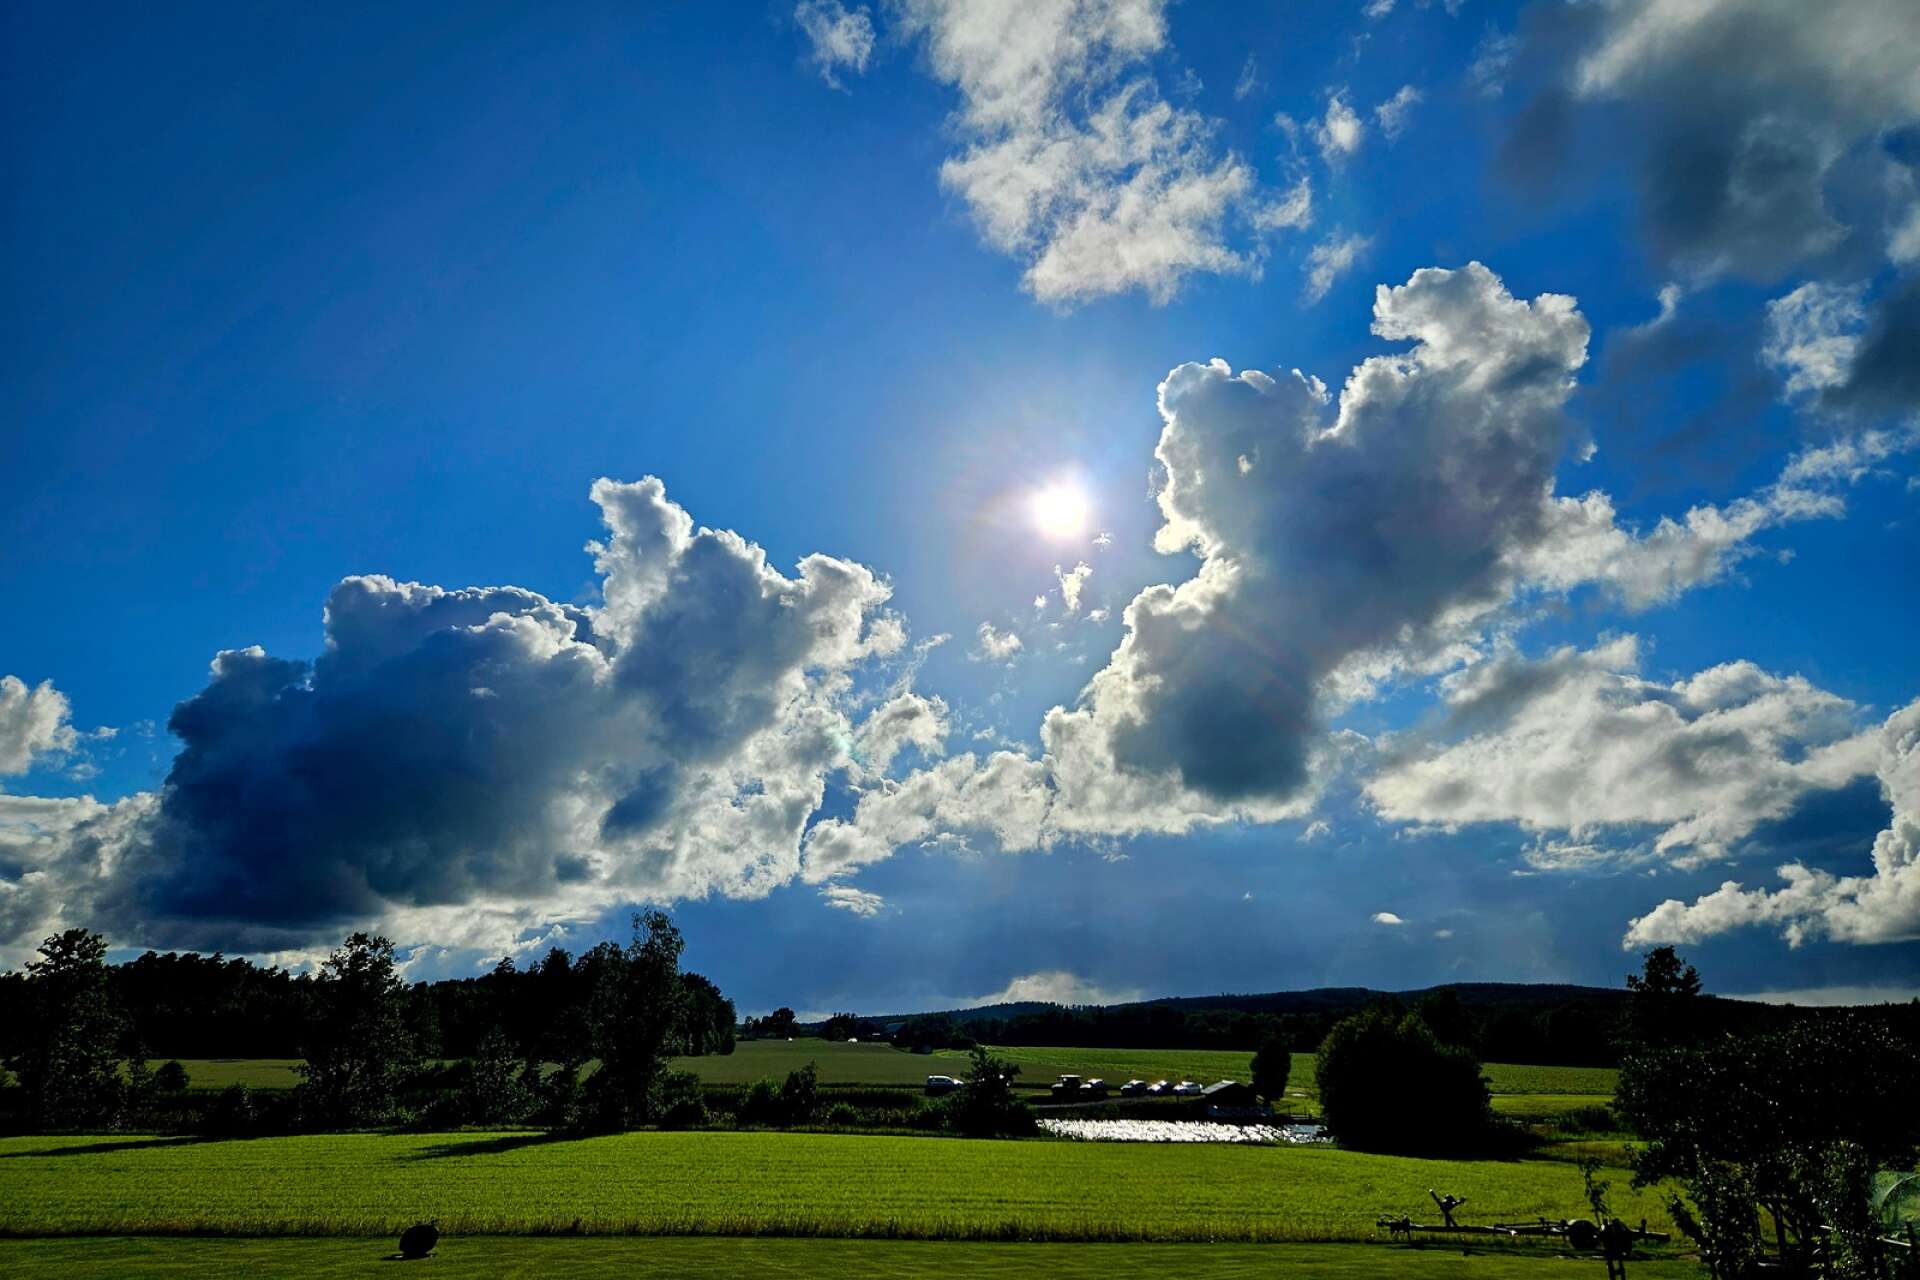 Sol och vackra moln över Nysäter. Birgitta Brunzell har tagit bilden.